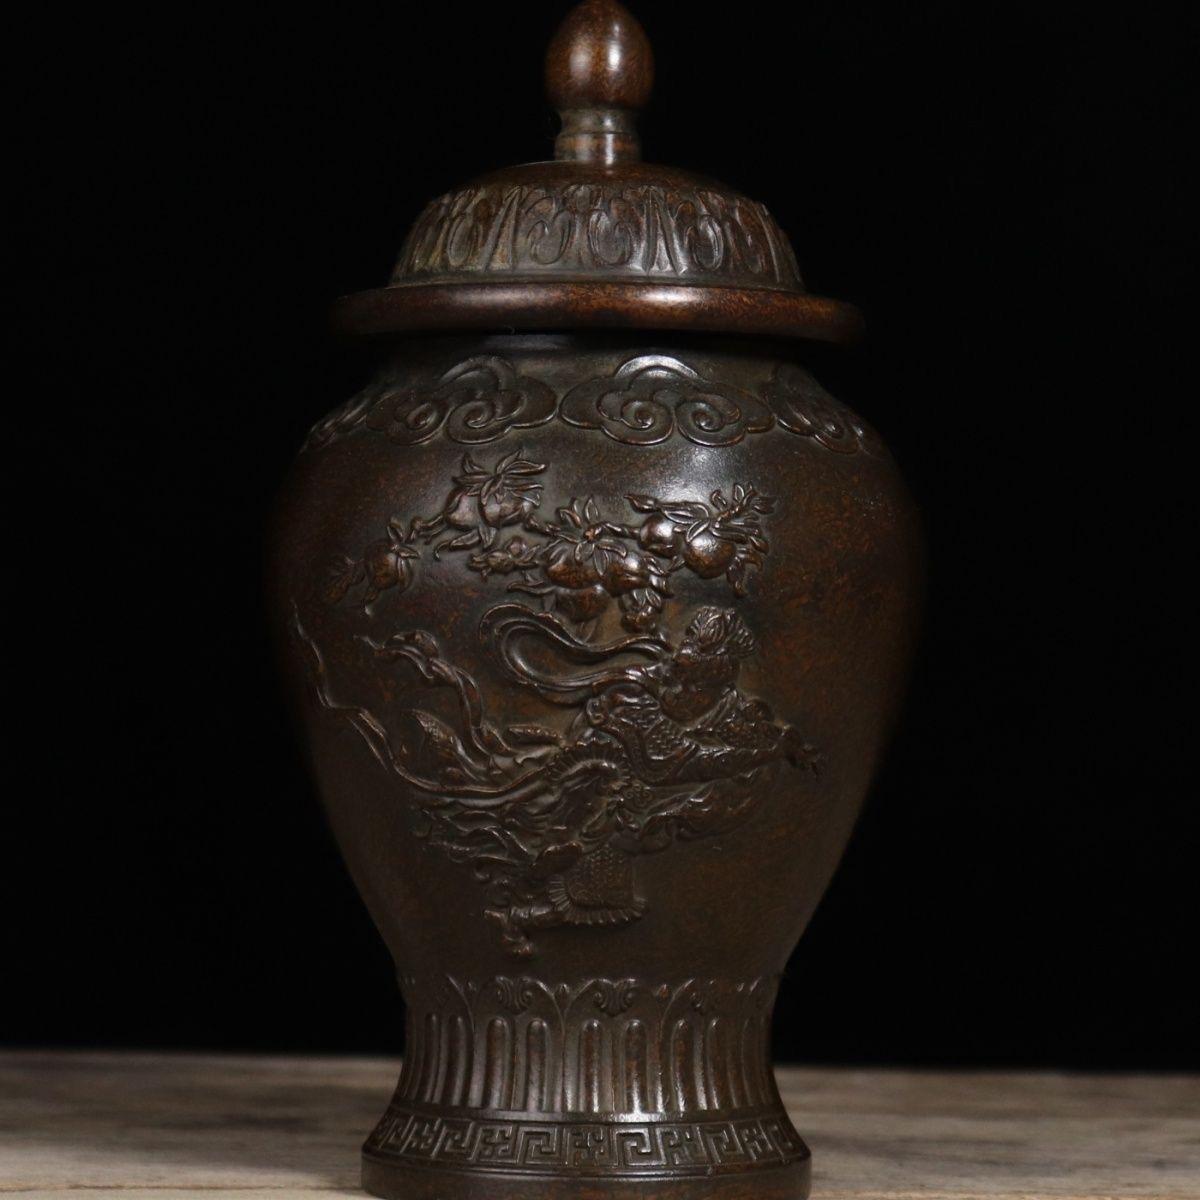 Cette ancienne jarre générale chinoise en bronze avec la célèbre histoire du singe soleil envoyant des pêches, la marque sur le fond Xuan signifie qu'elle a été faite dans la dynastie Qing période Xuan Tong, bon état, bon pour la décoration et la